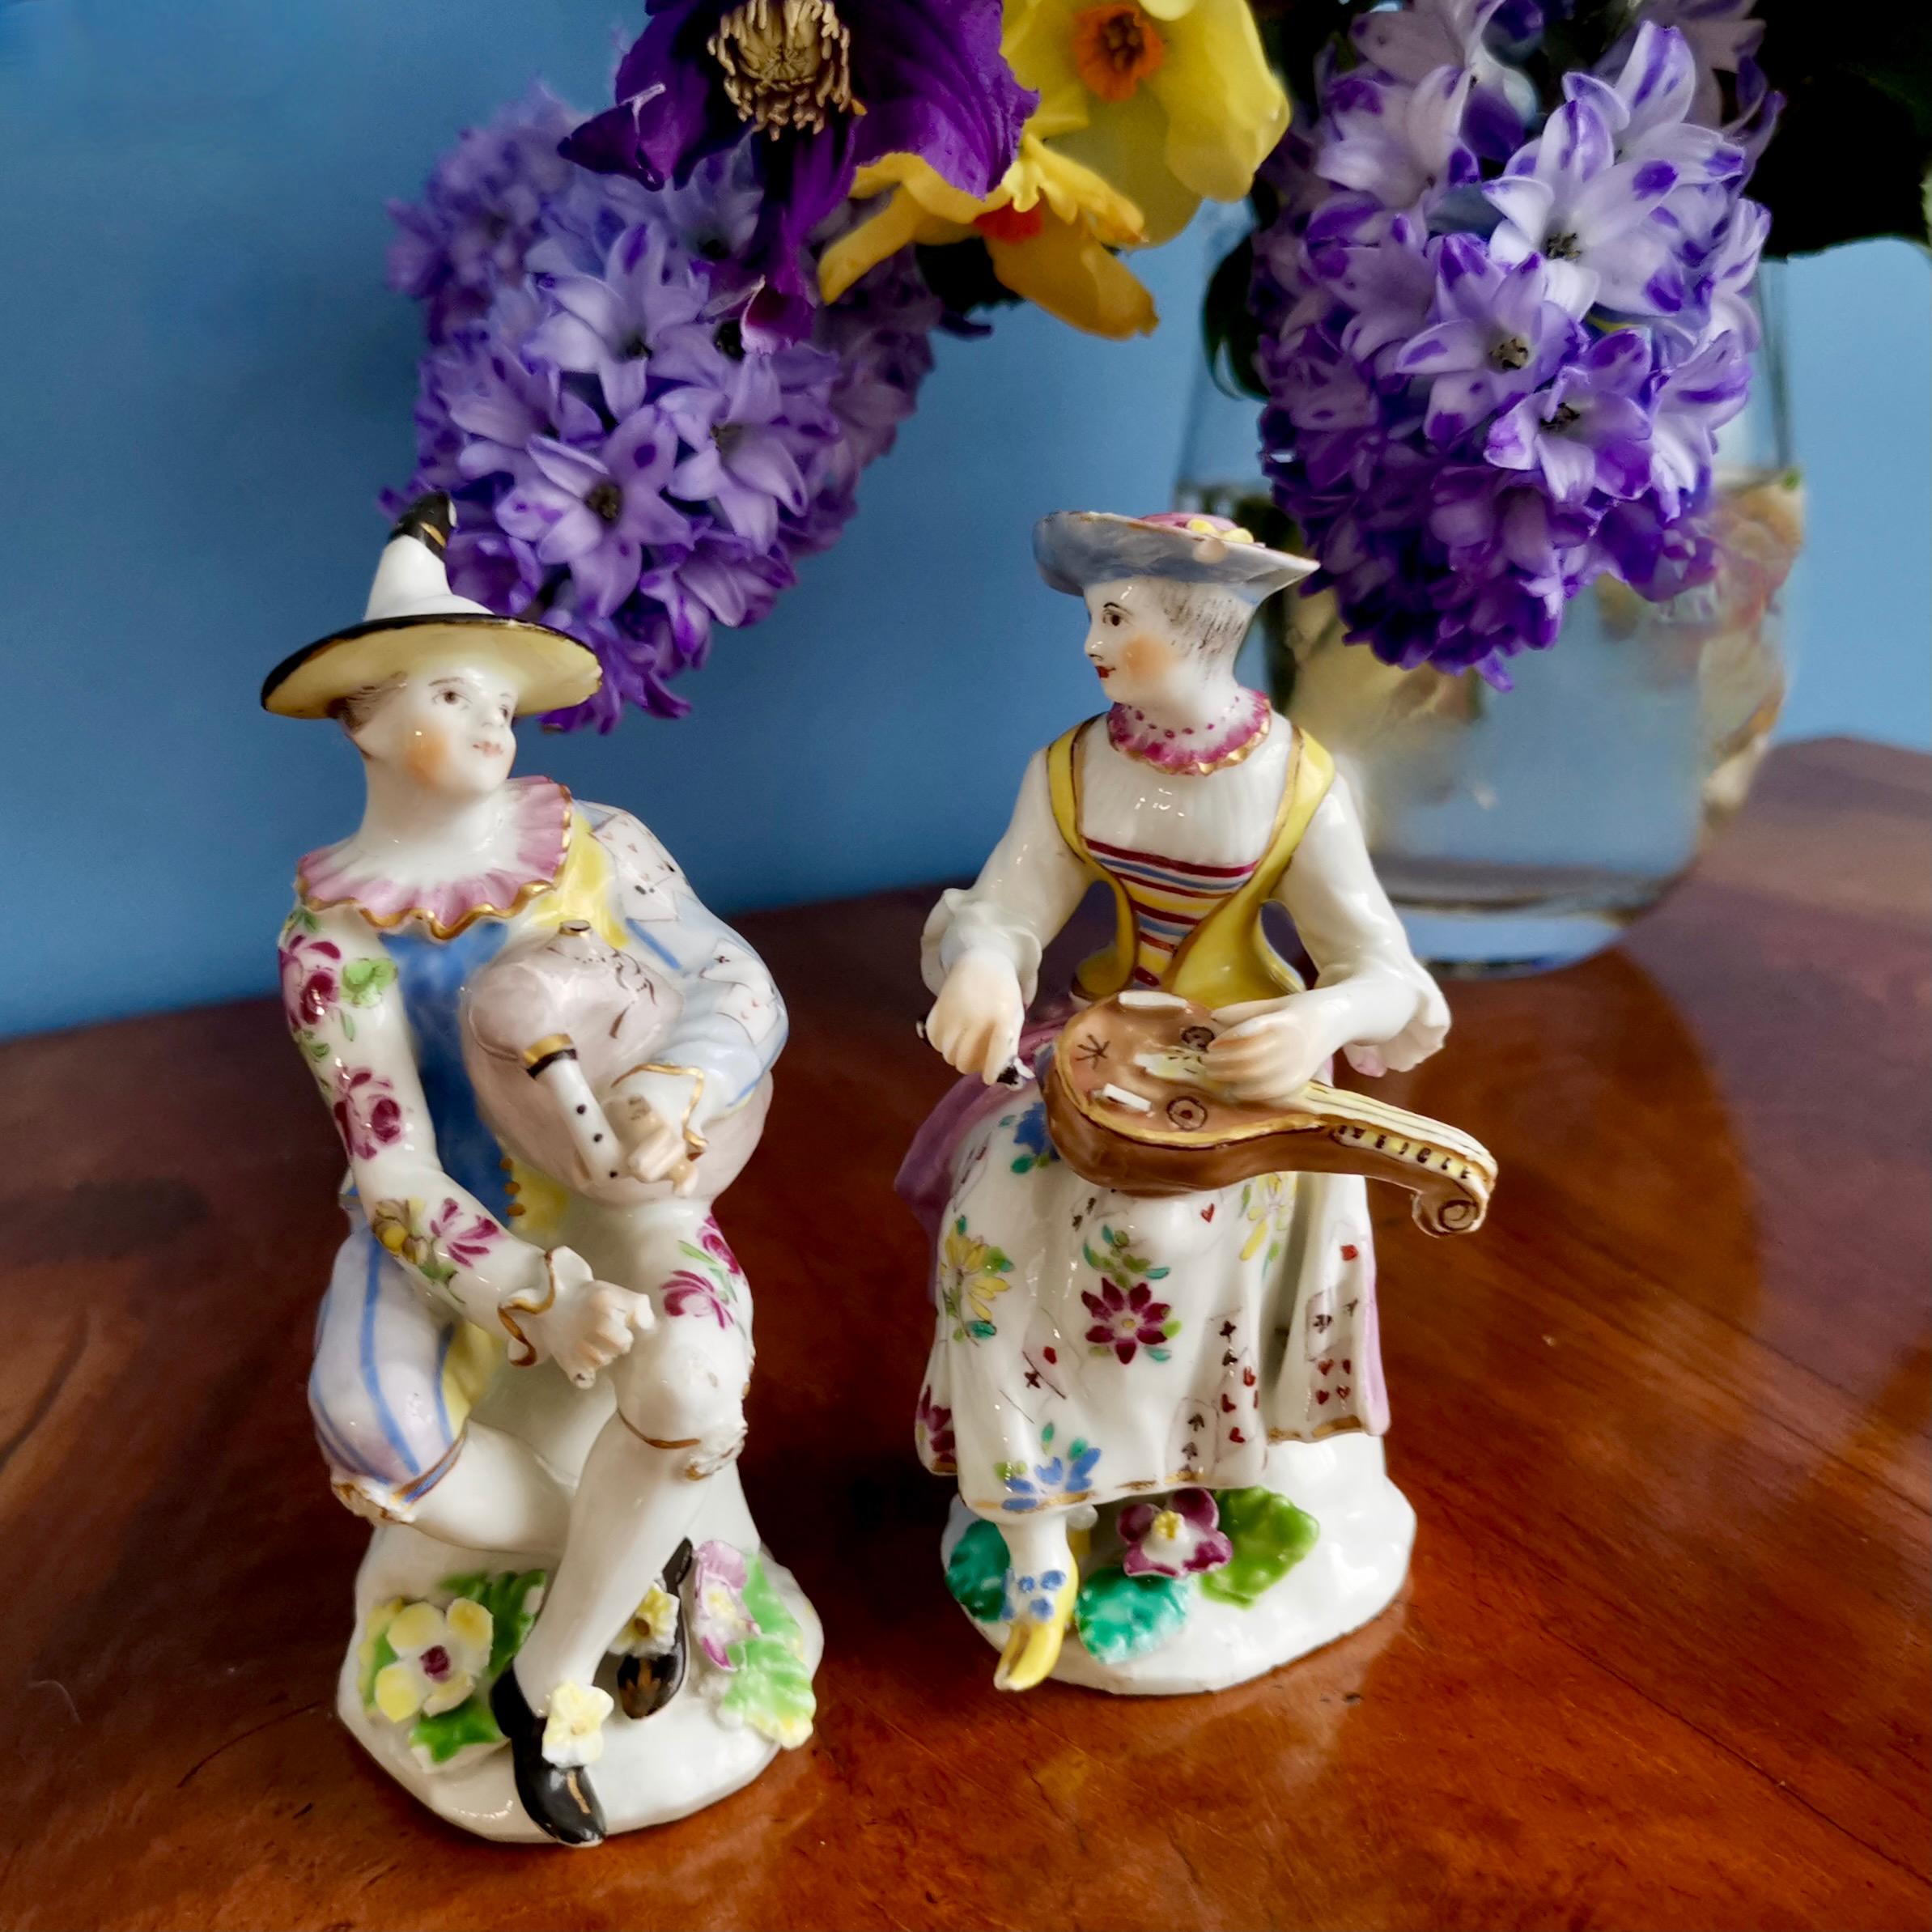 Il s'agit d'une magnifique paire de figurines d'Arlecchino et Columbina, fabriquées par la manufacture de porcelaine Bow vers 1758. Ces figures faisaient partie d'une série de la Commedia dell'Arte, une série très populaire de figures théâtrales qui